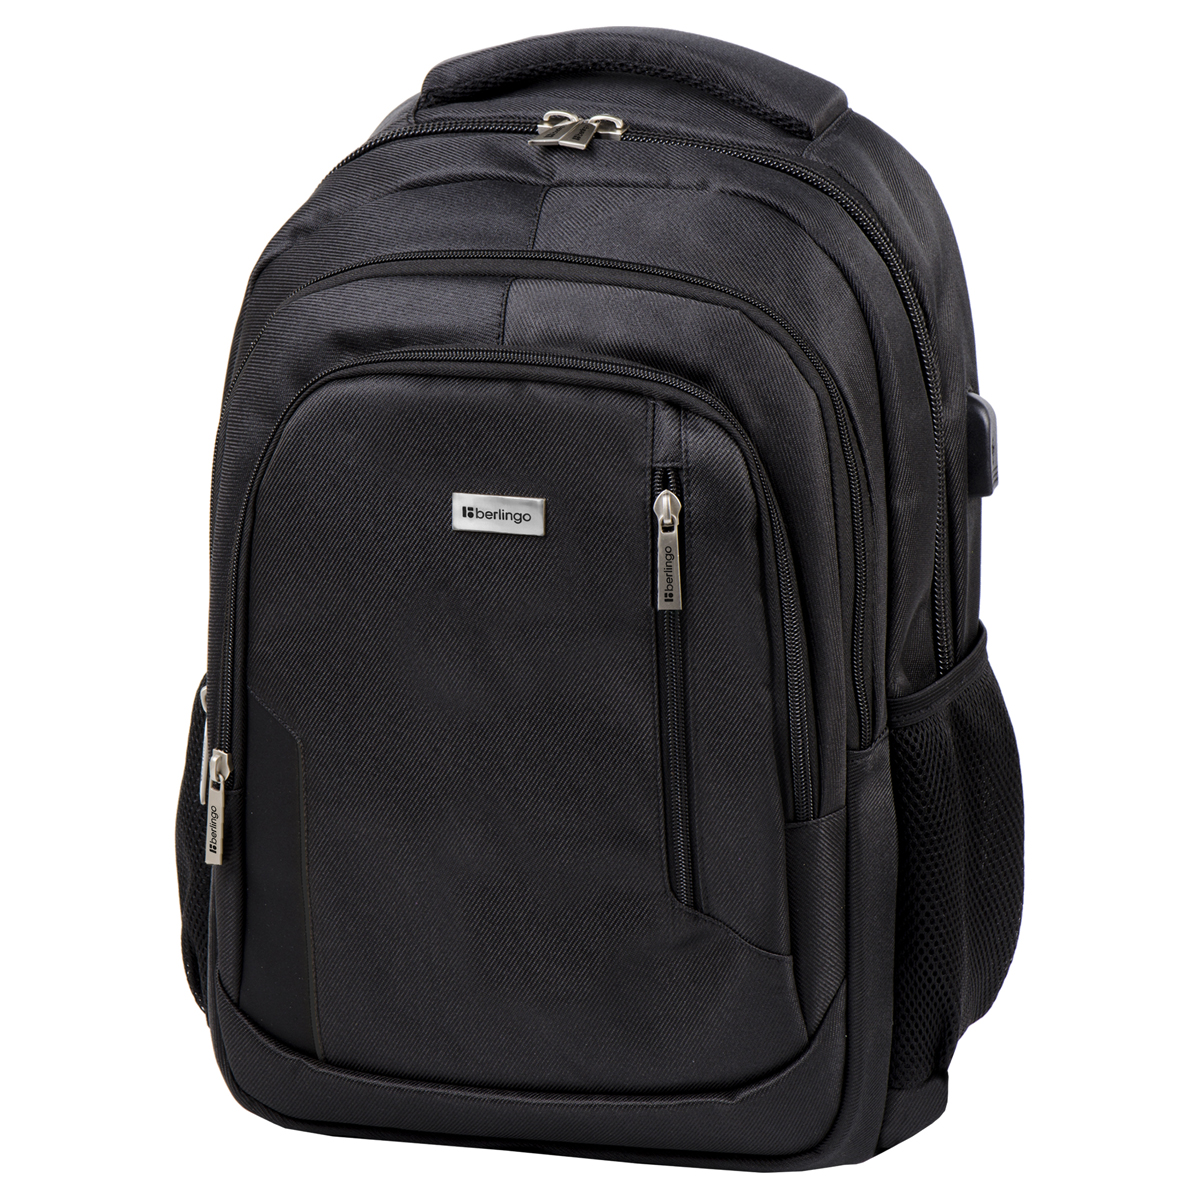 Рюкзак Berlingo City Comfort black 42*29*17см, 3 отделения, 3 кармана, отделение для ноутбука, USB